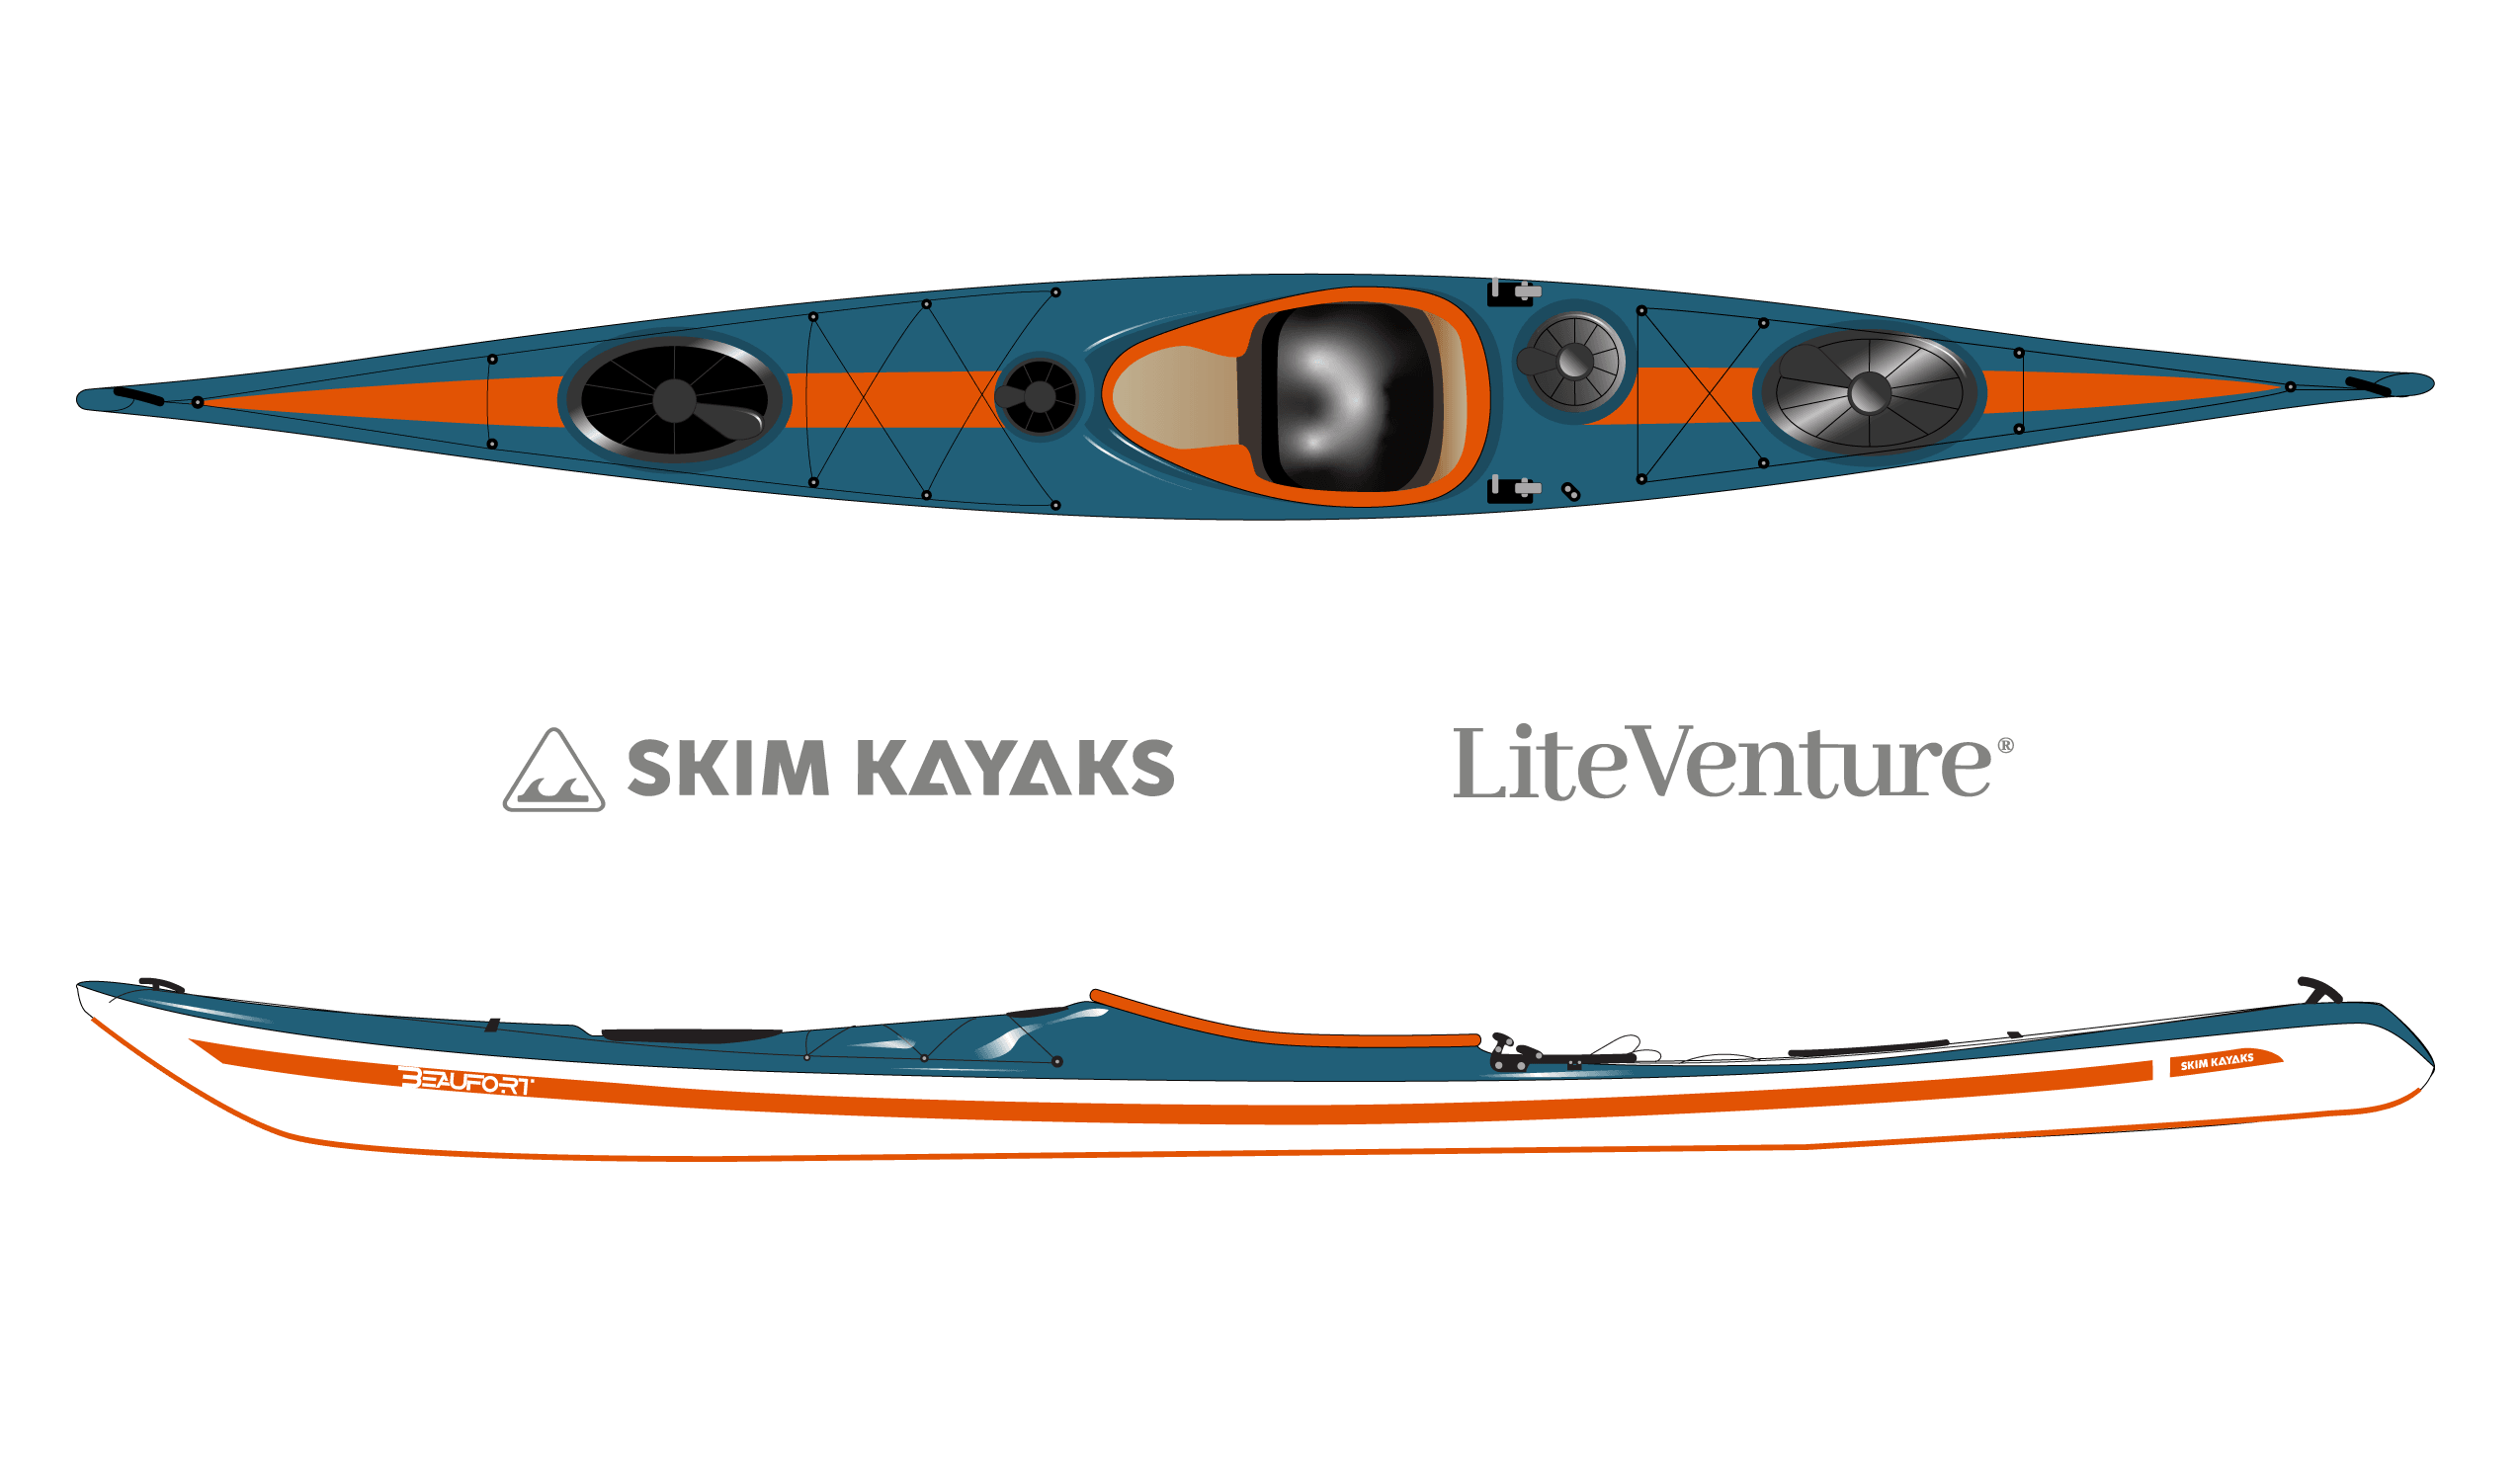 Produktbild von Kajak " Beaufort XL Traditional-azurblau orange " der Marke SKIM Kayaks für 3950.00 €. Erhältlich online bei Lite Venture ( www.liteventure.de )